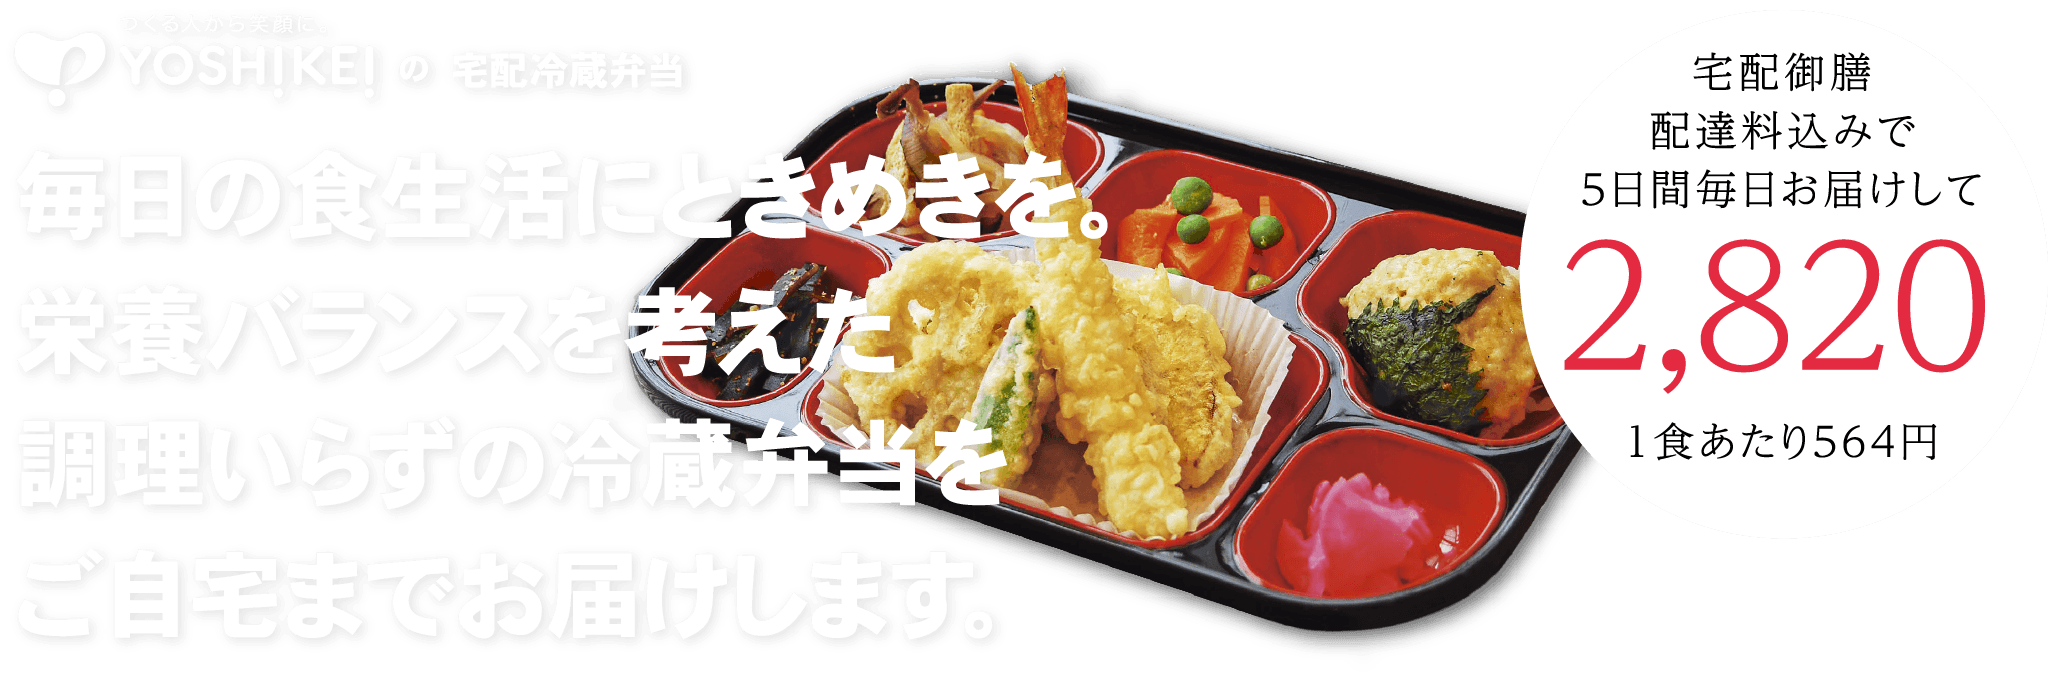 【ヨシケイの宅配冷蔵弁当】毎日の食生活にときめきを。栄養バランスを考えた調理いらずの冷蔵弁当をご自宅までお届けします。